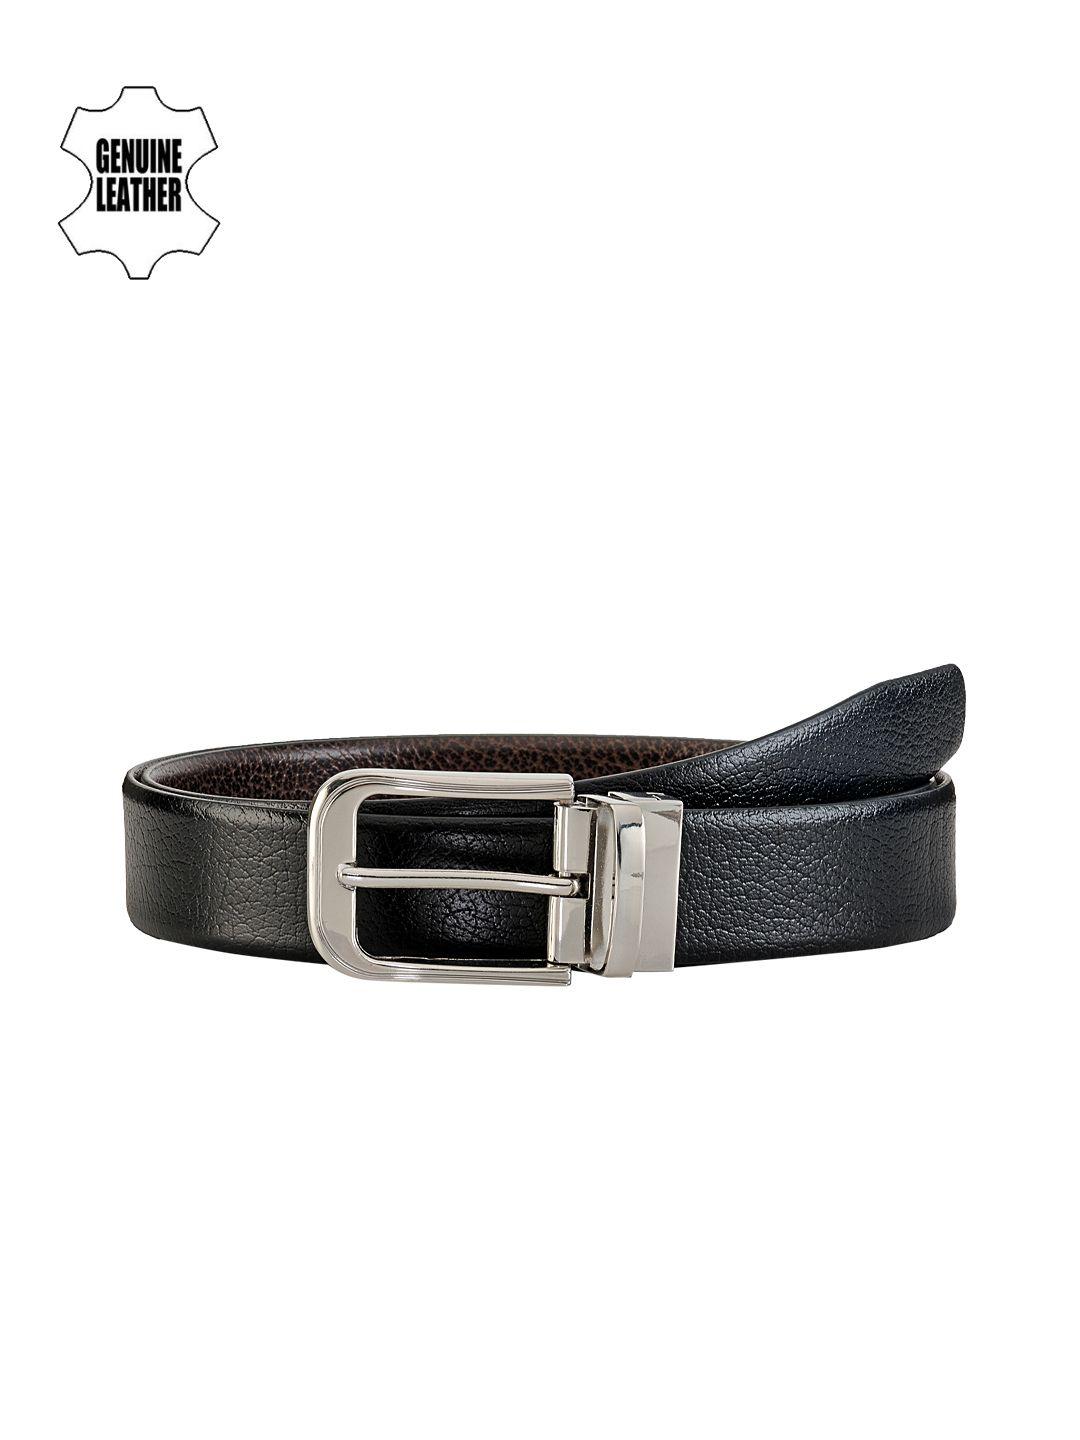 teakwood leathers men black & brown reversible genuine leather belt